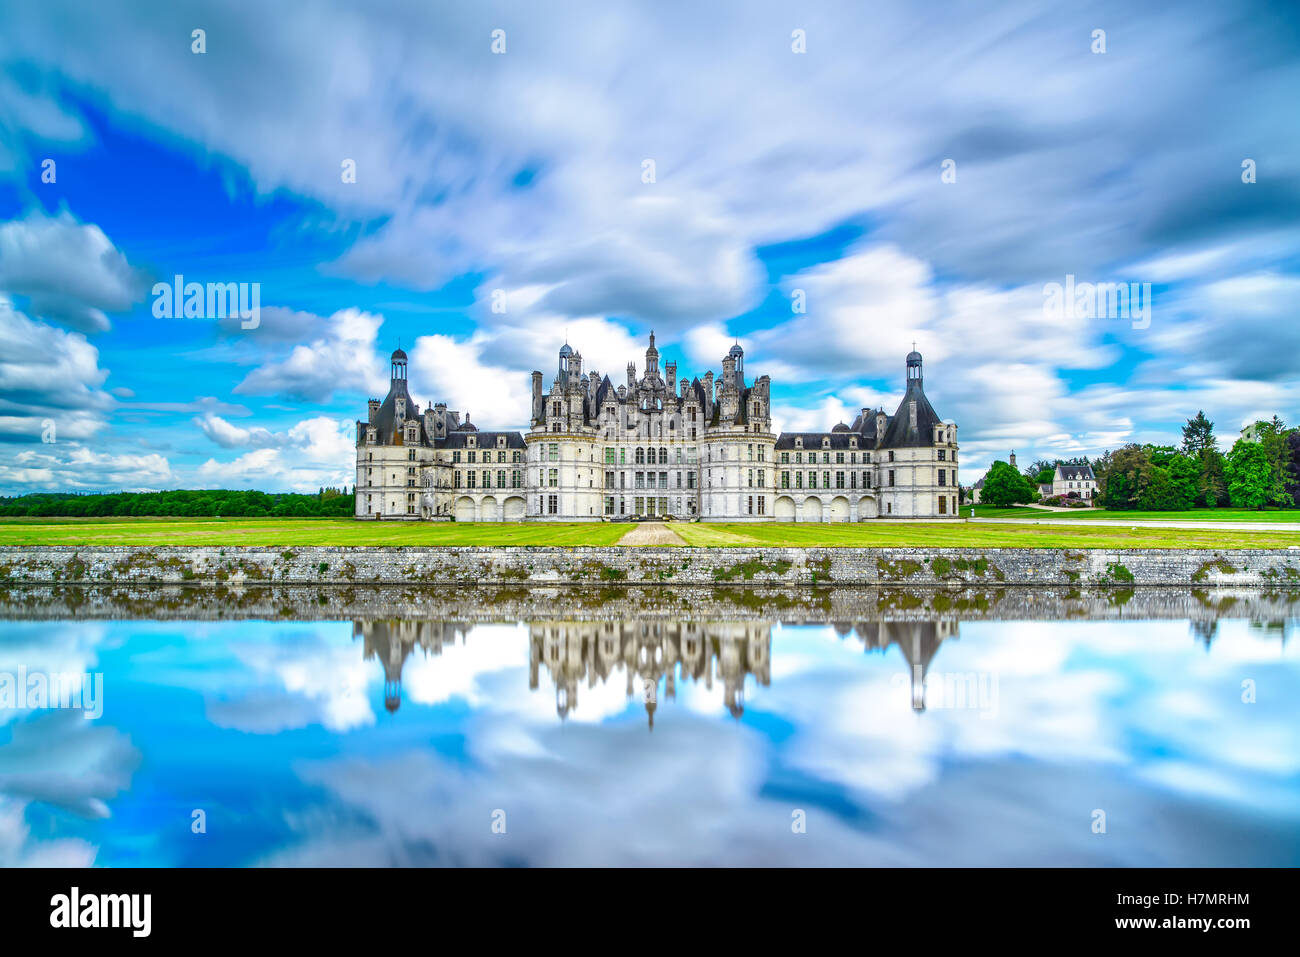 Chateau de Chambord, royal medievale castello francese e di riflessione. Valle della Loira, in Francia, in Europa. Unesco patrimonio dell'umanità. Foto Stock